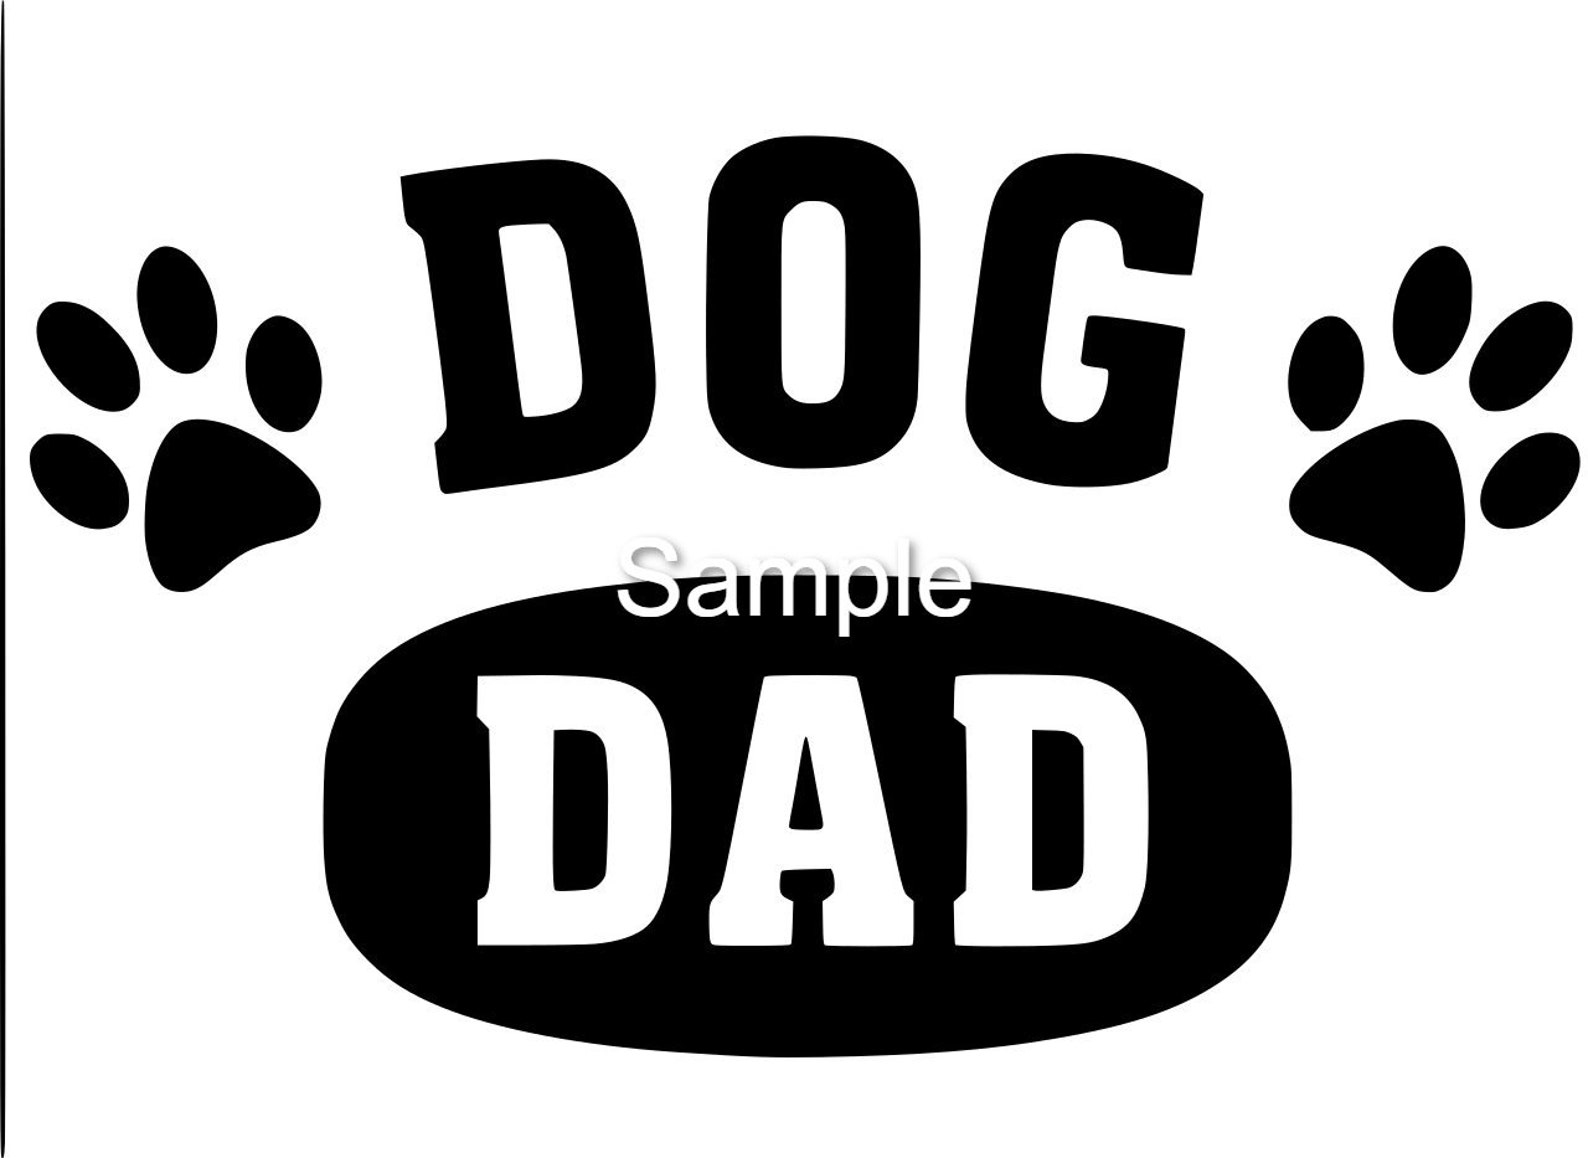 Dog Dad Svg Jpg Dxf and Png Files Digital INSTANT DOWNLOAD | Etsy Australia